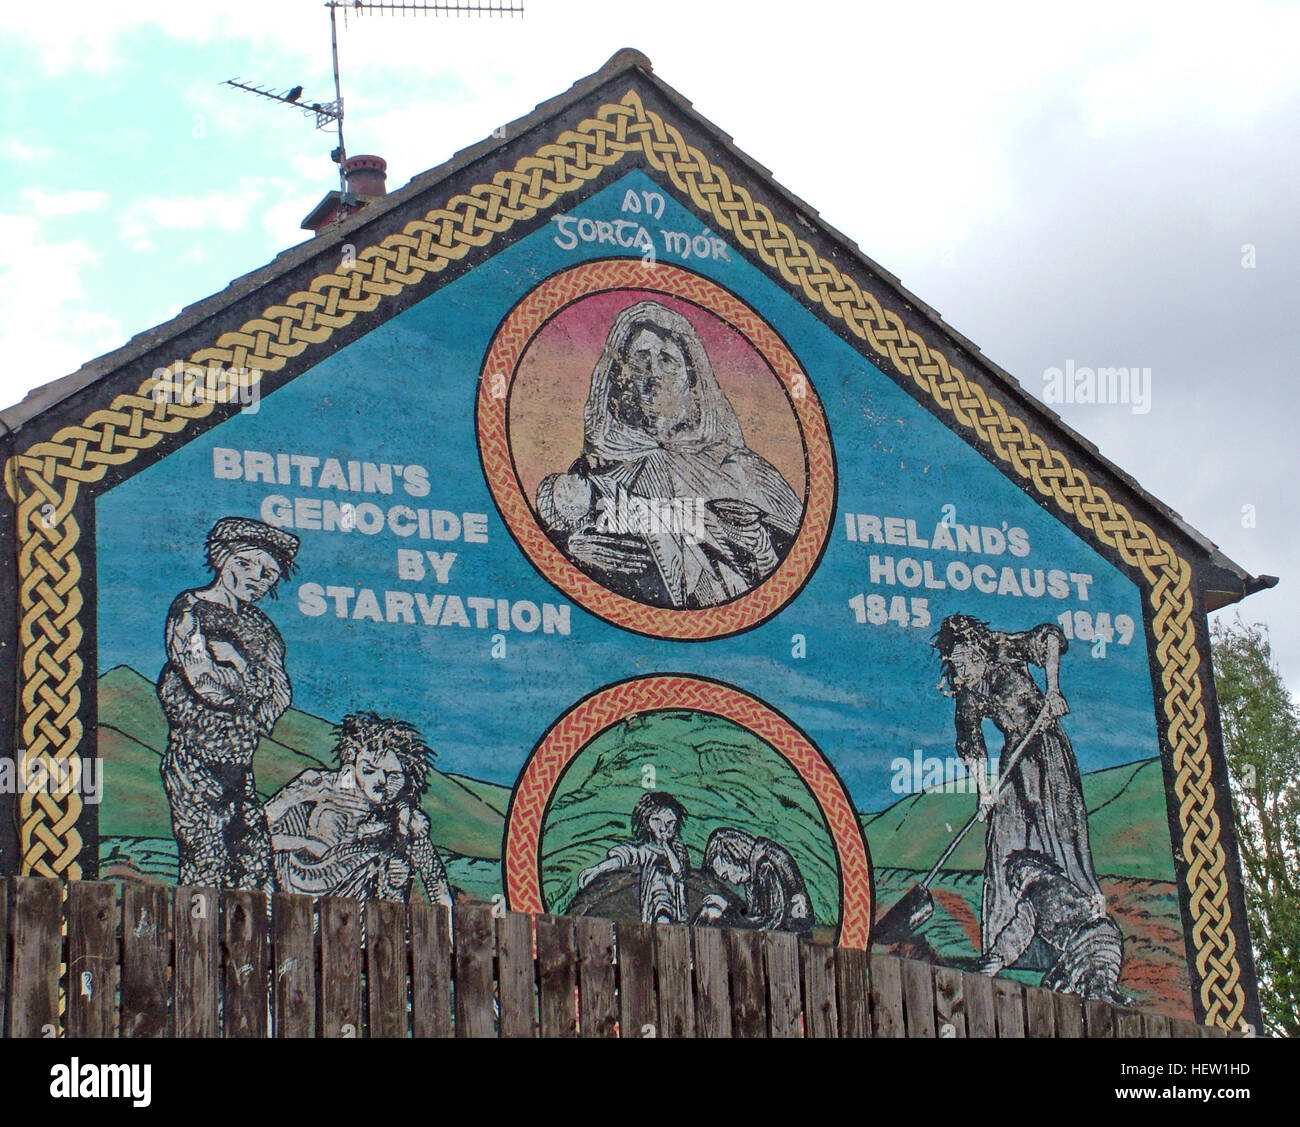 Belfast cade Rd Mural-Britains repubblicano genocidio per fame, Irlanda olocausto sull'alloggiamento station wagon gable end Foto Stock